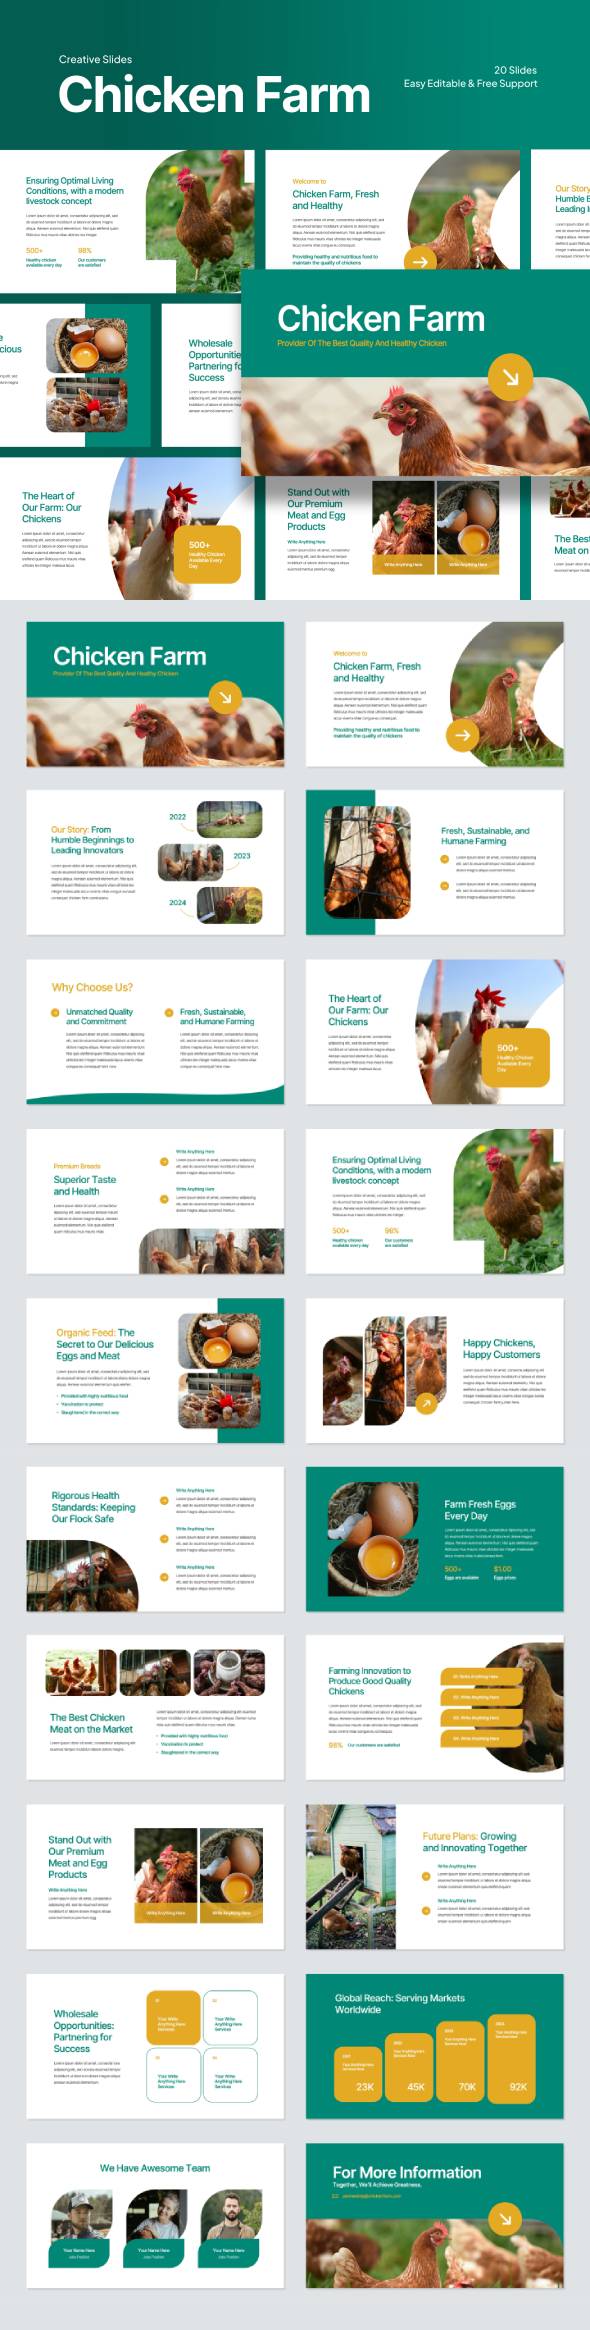 [DOWNLOAD]Chicken Farm Google Slides Template